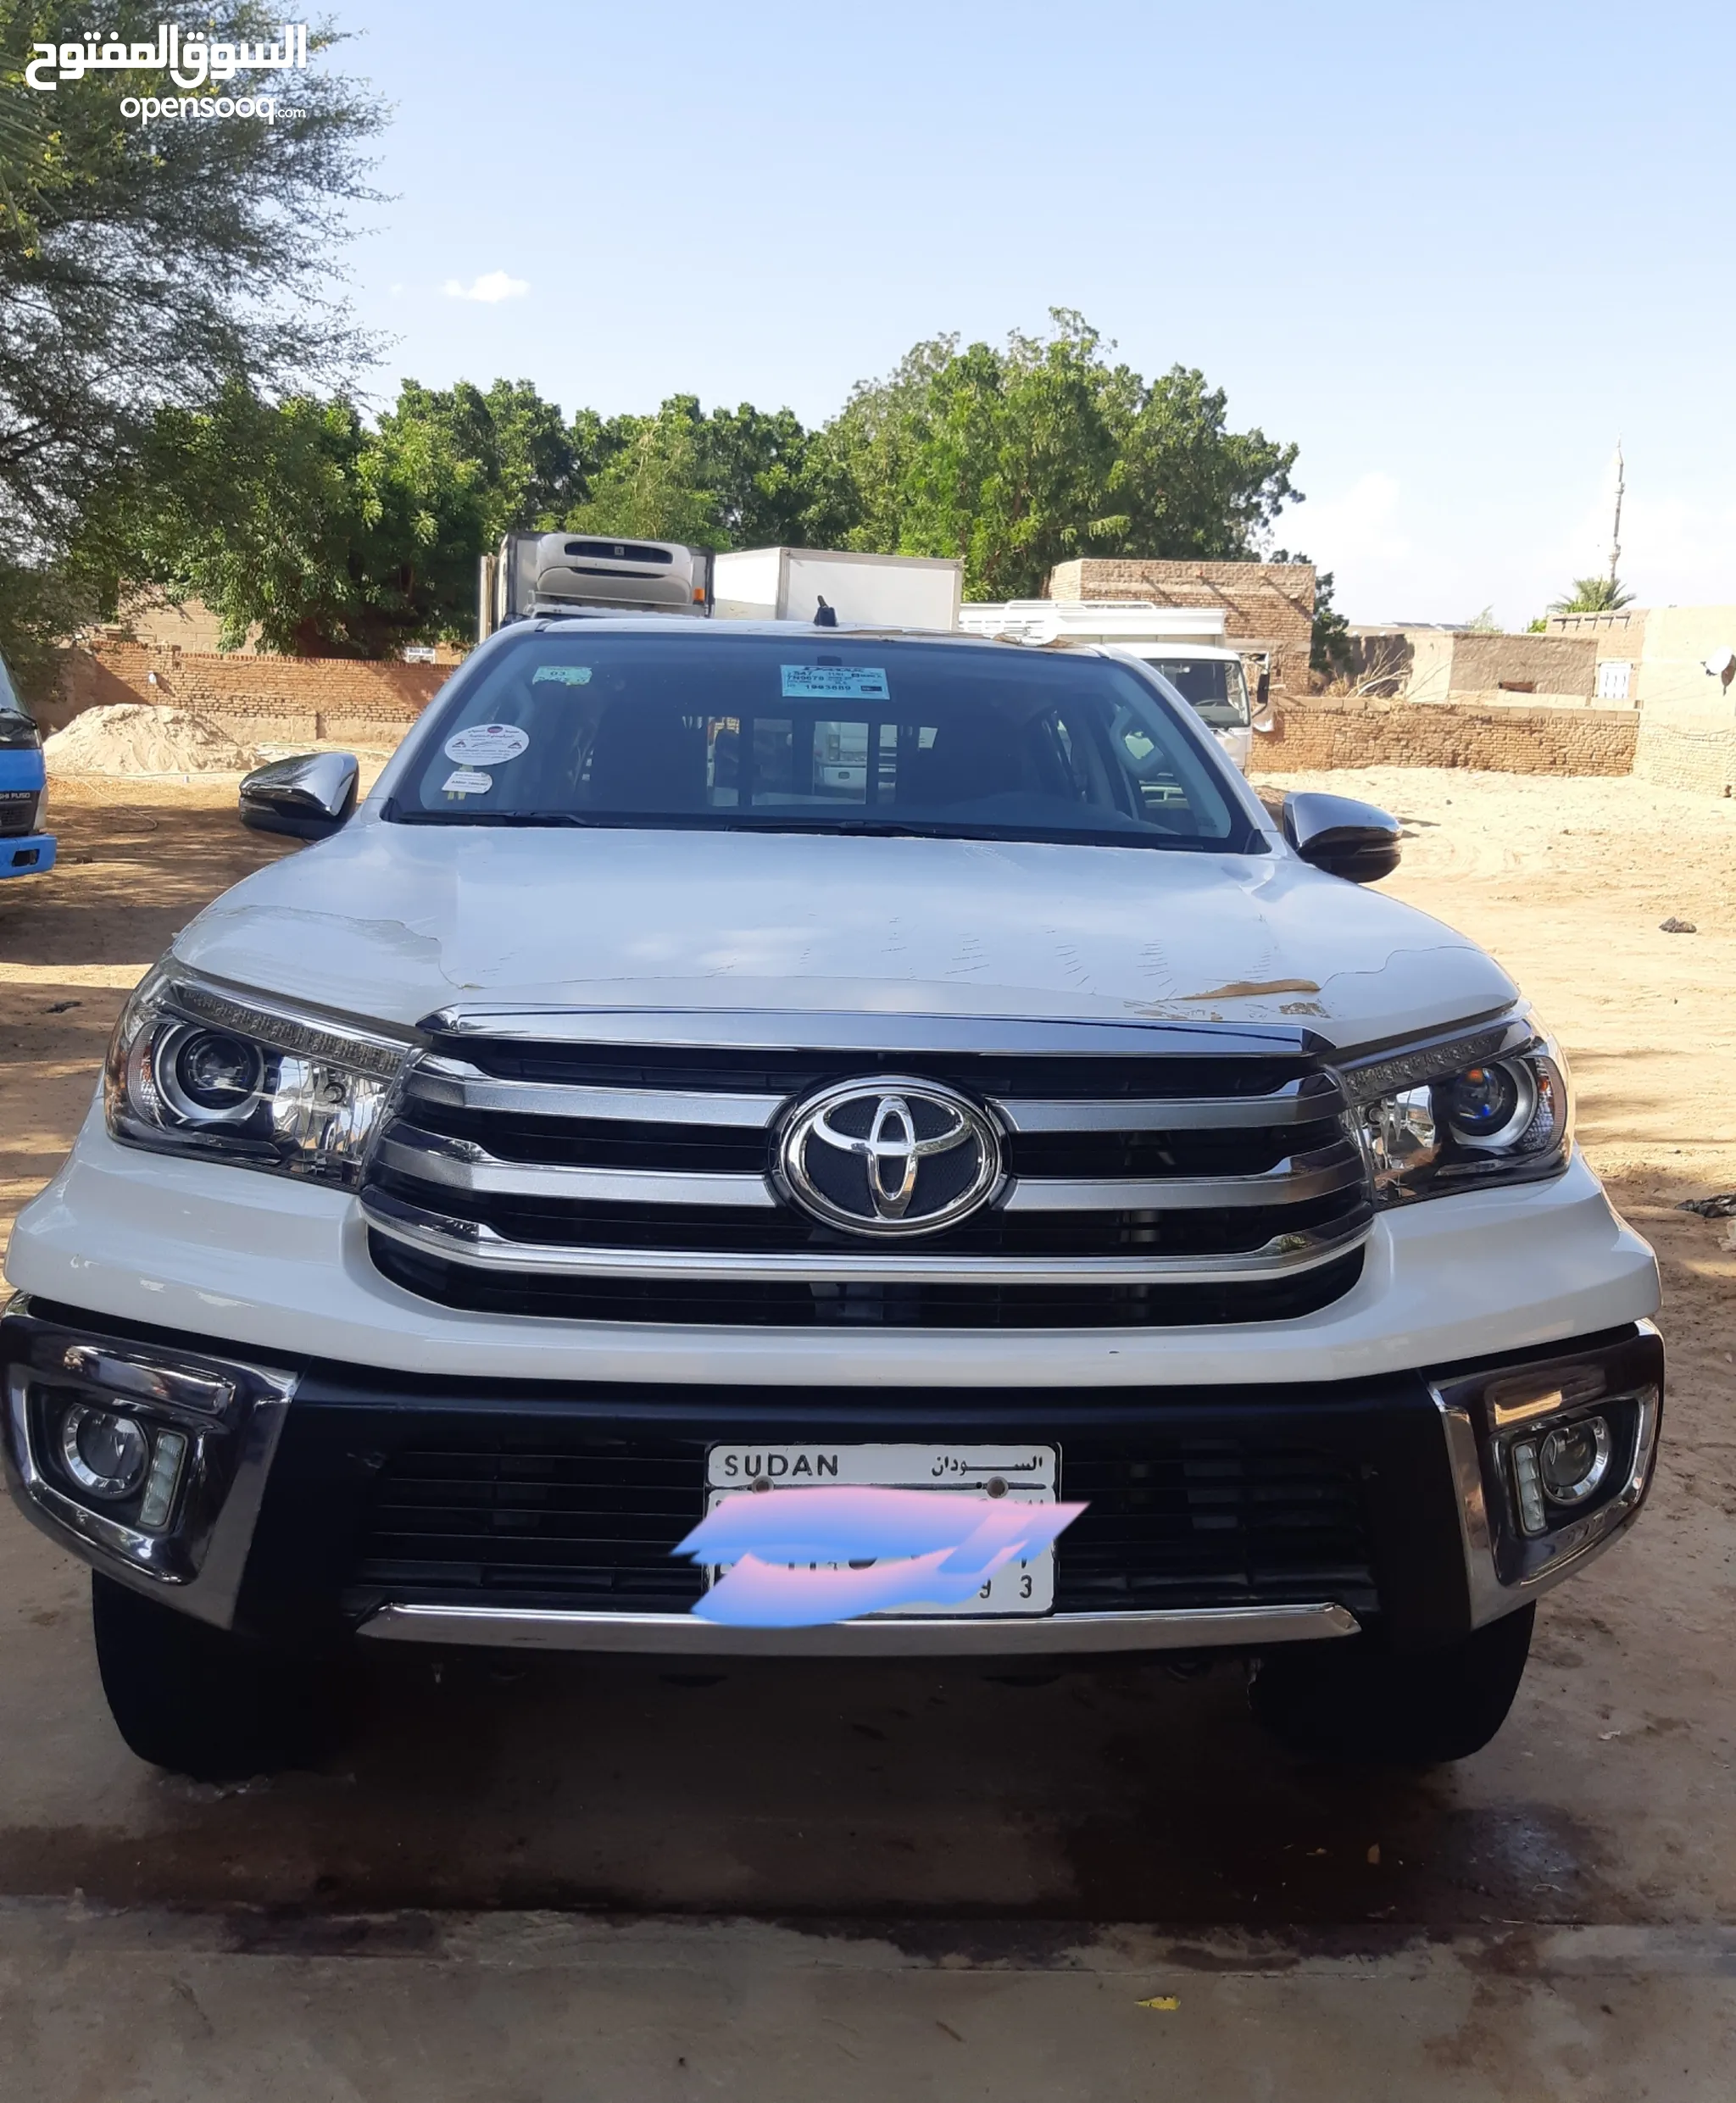 سيارات للبيع مستعملة و جديدة للبيع في السودان | السوق المفتوح